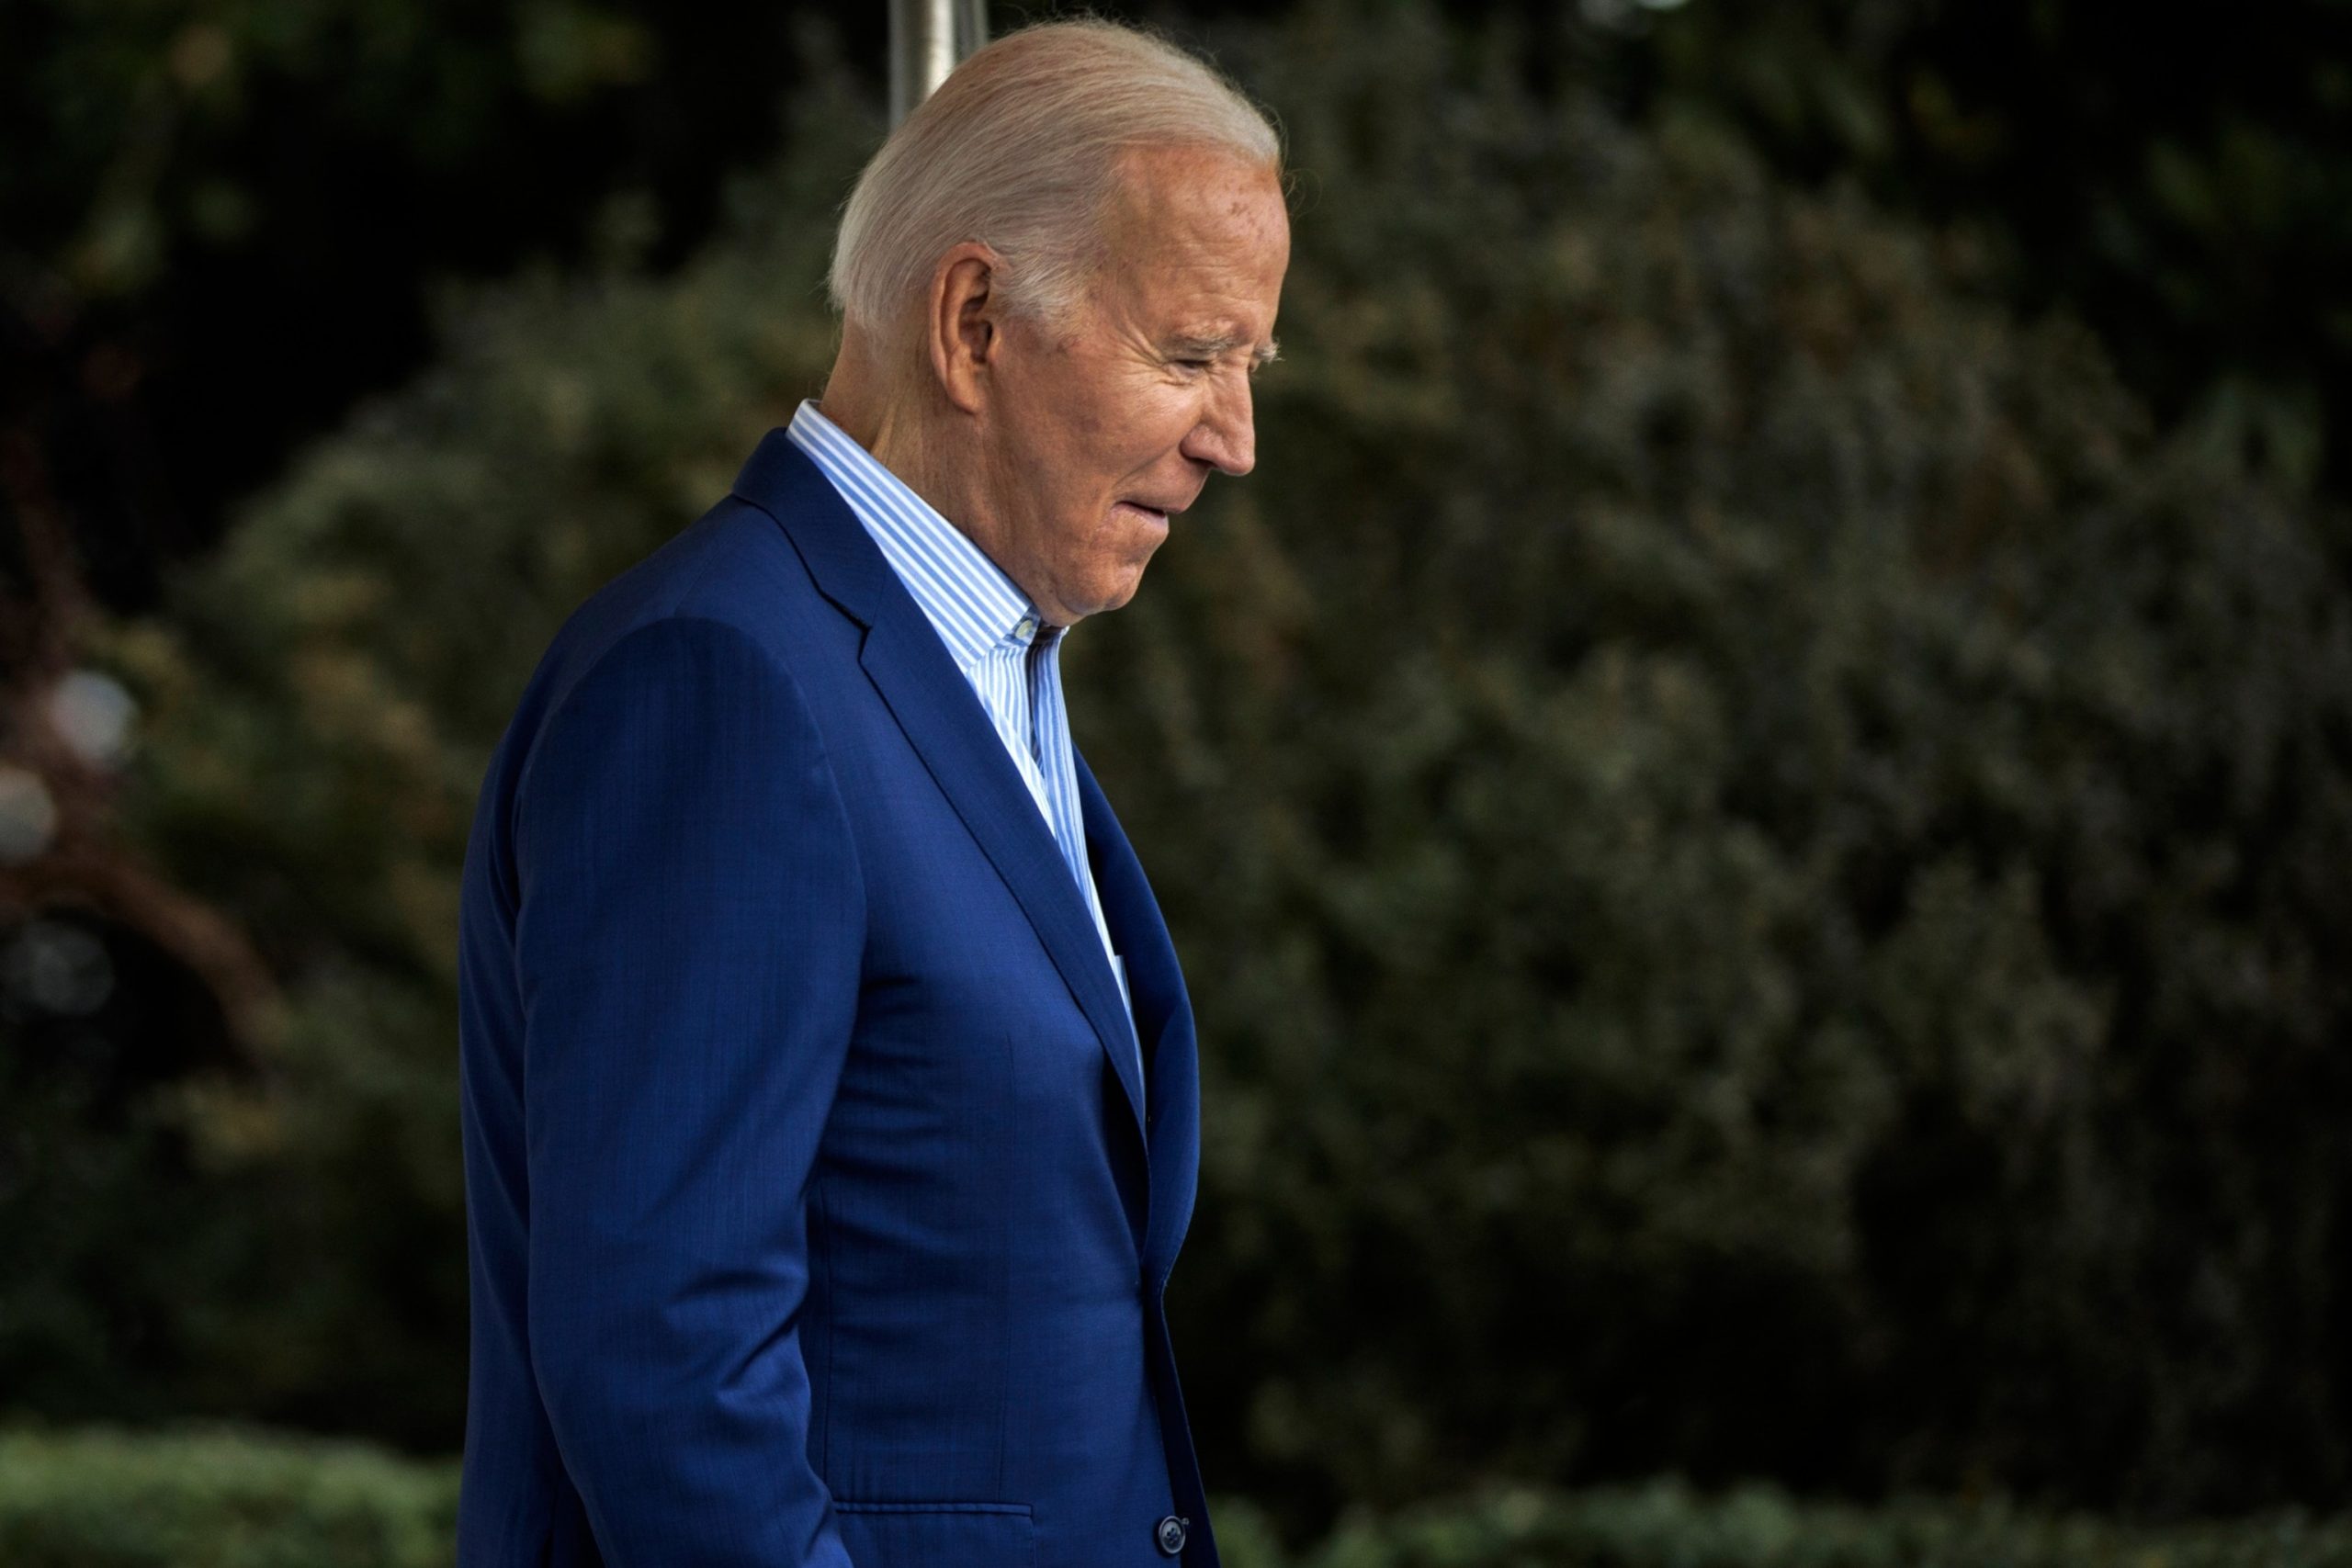 One Year After Toxic Train Derailment, Biden to Visit East Palestine